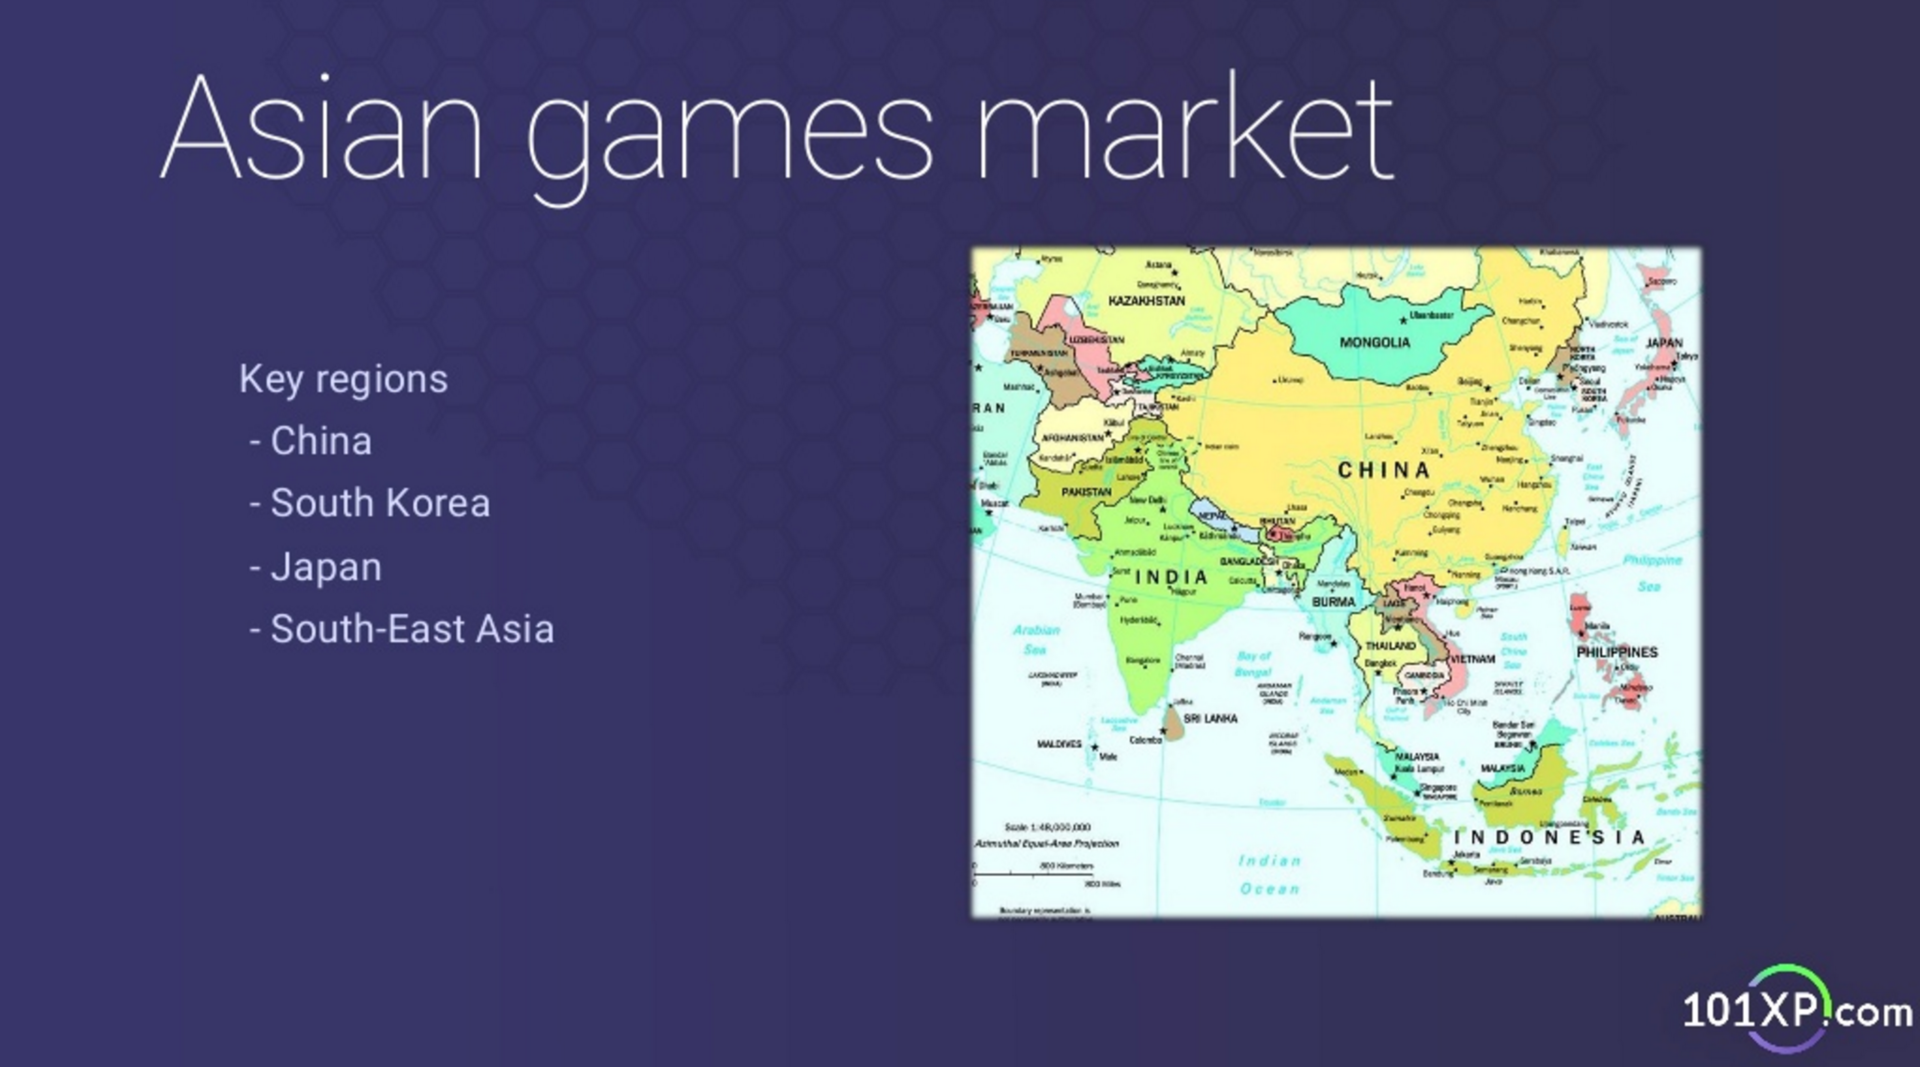 Продвижение мобильных игр на азиатском рынке. Интервью с Ильей Саламатовым, 101XP - 1